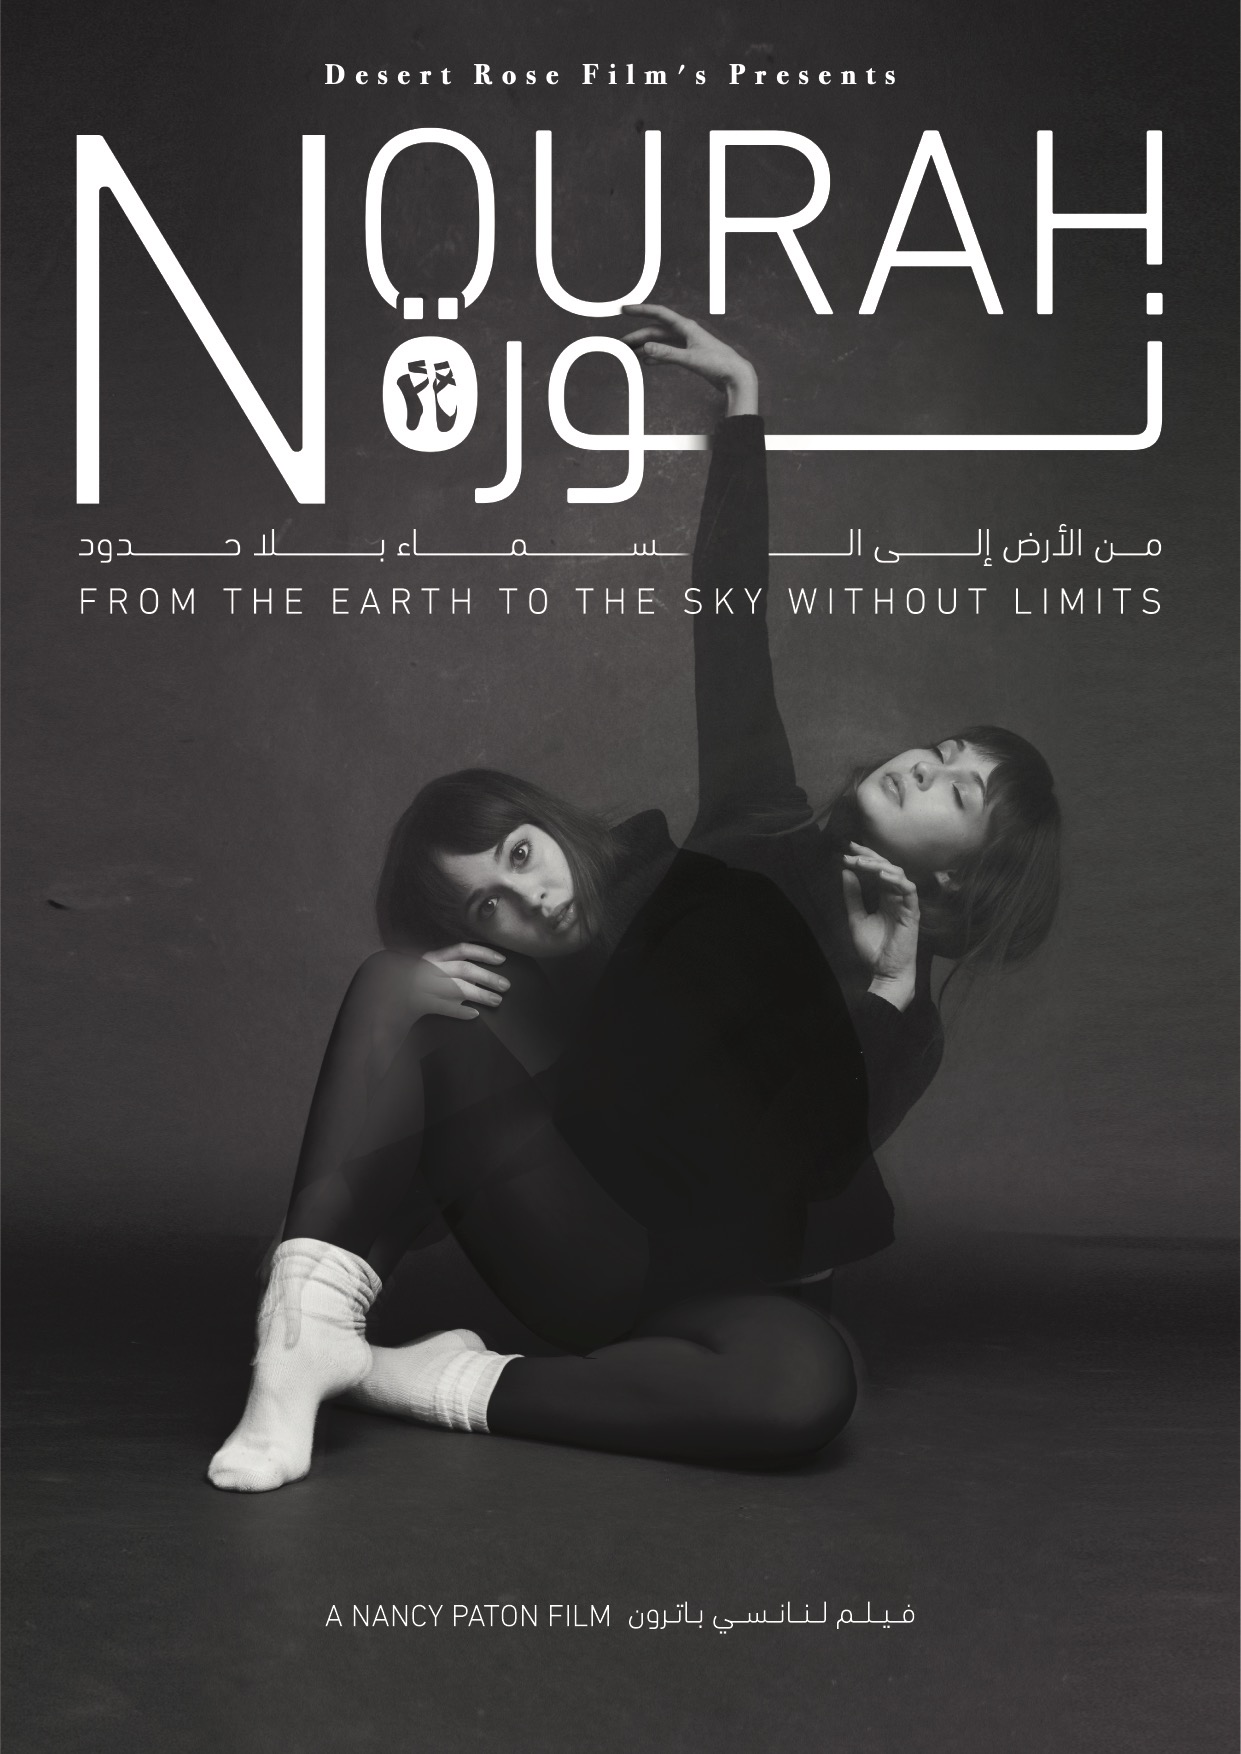 Nourah Desert Rose Films